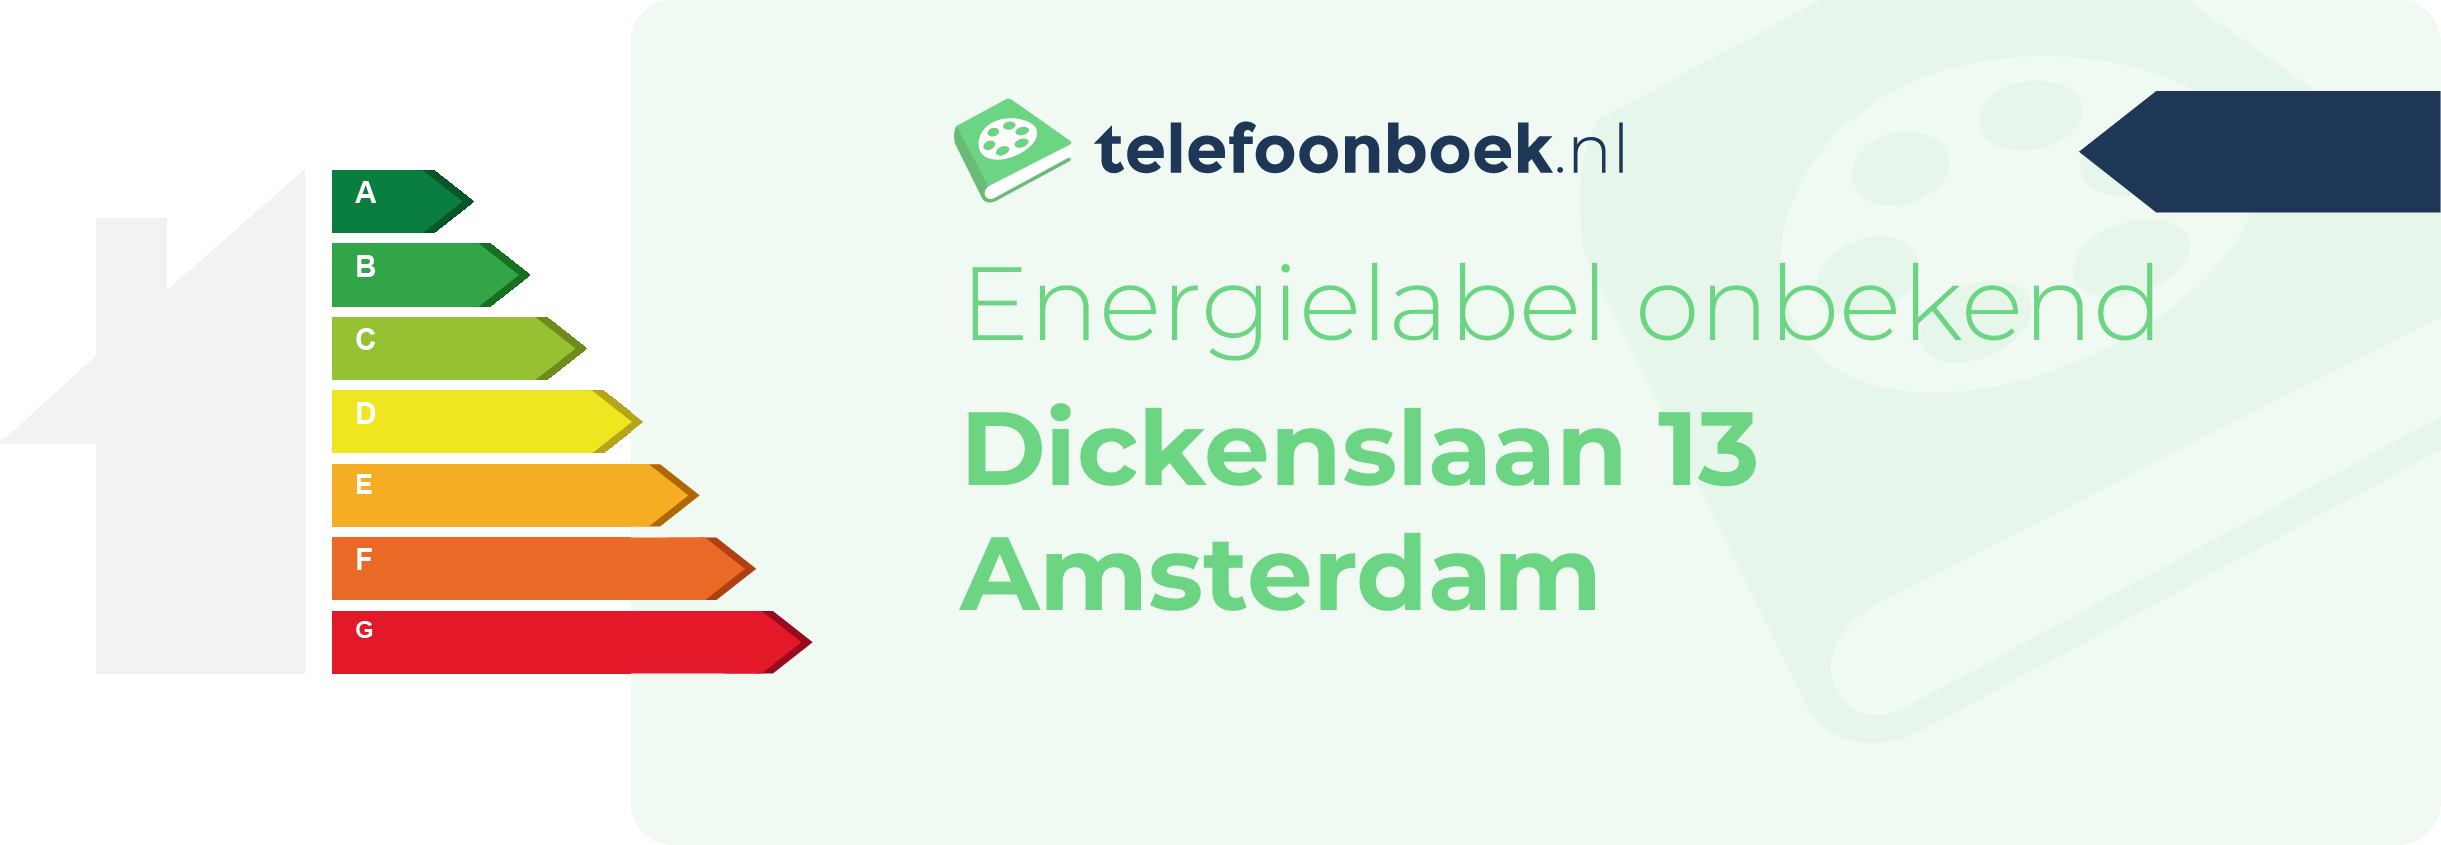 Energielabel Dickenslaan 13 Amsterdam